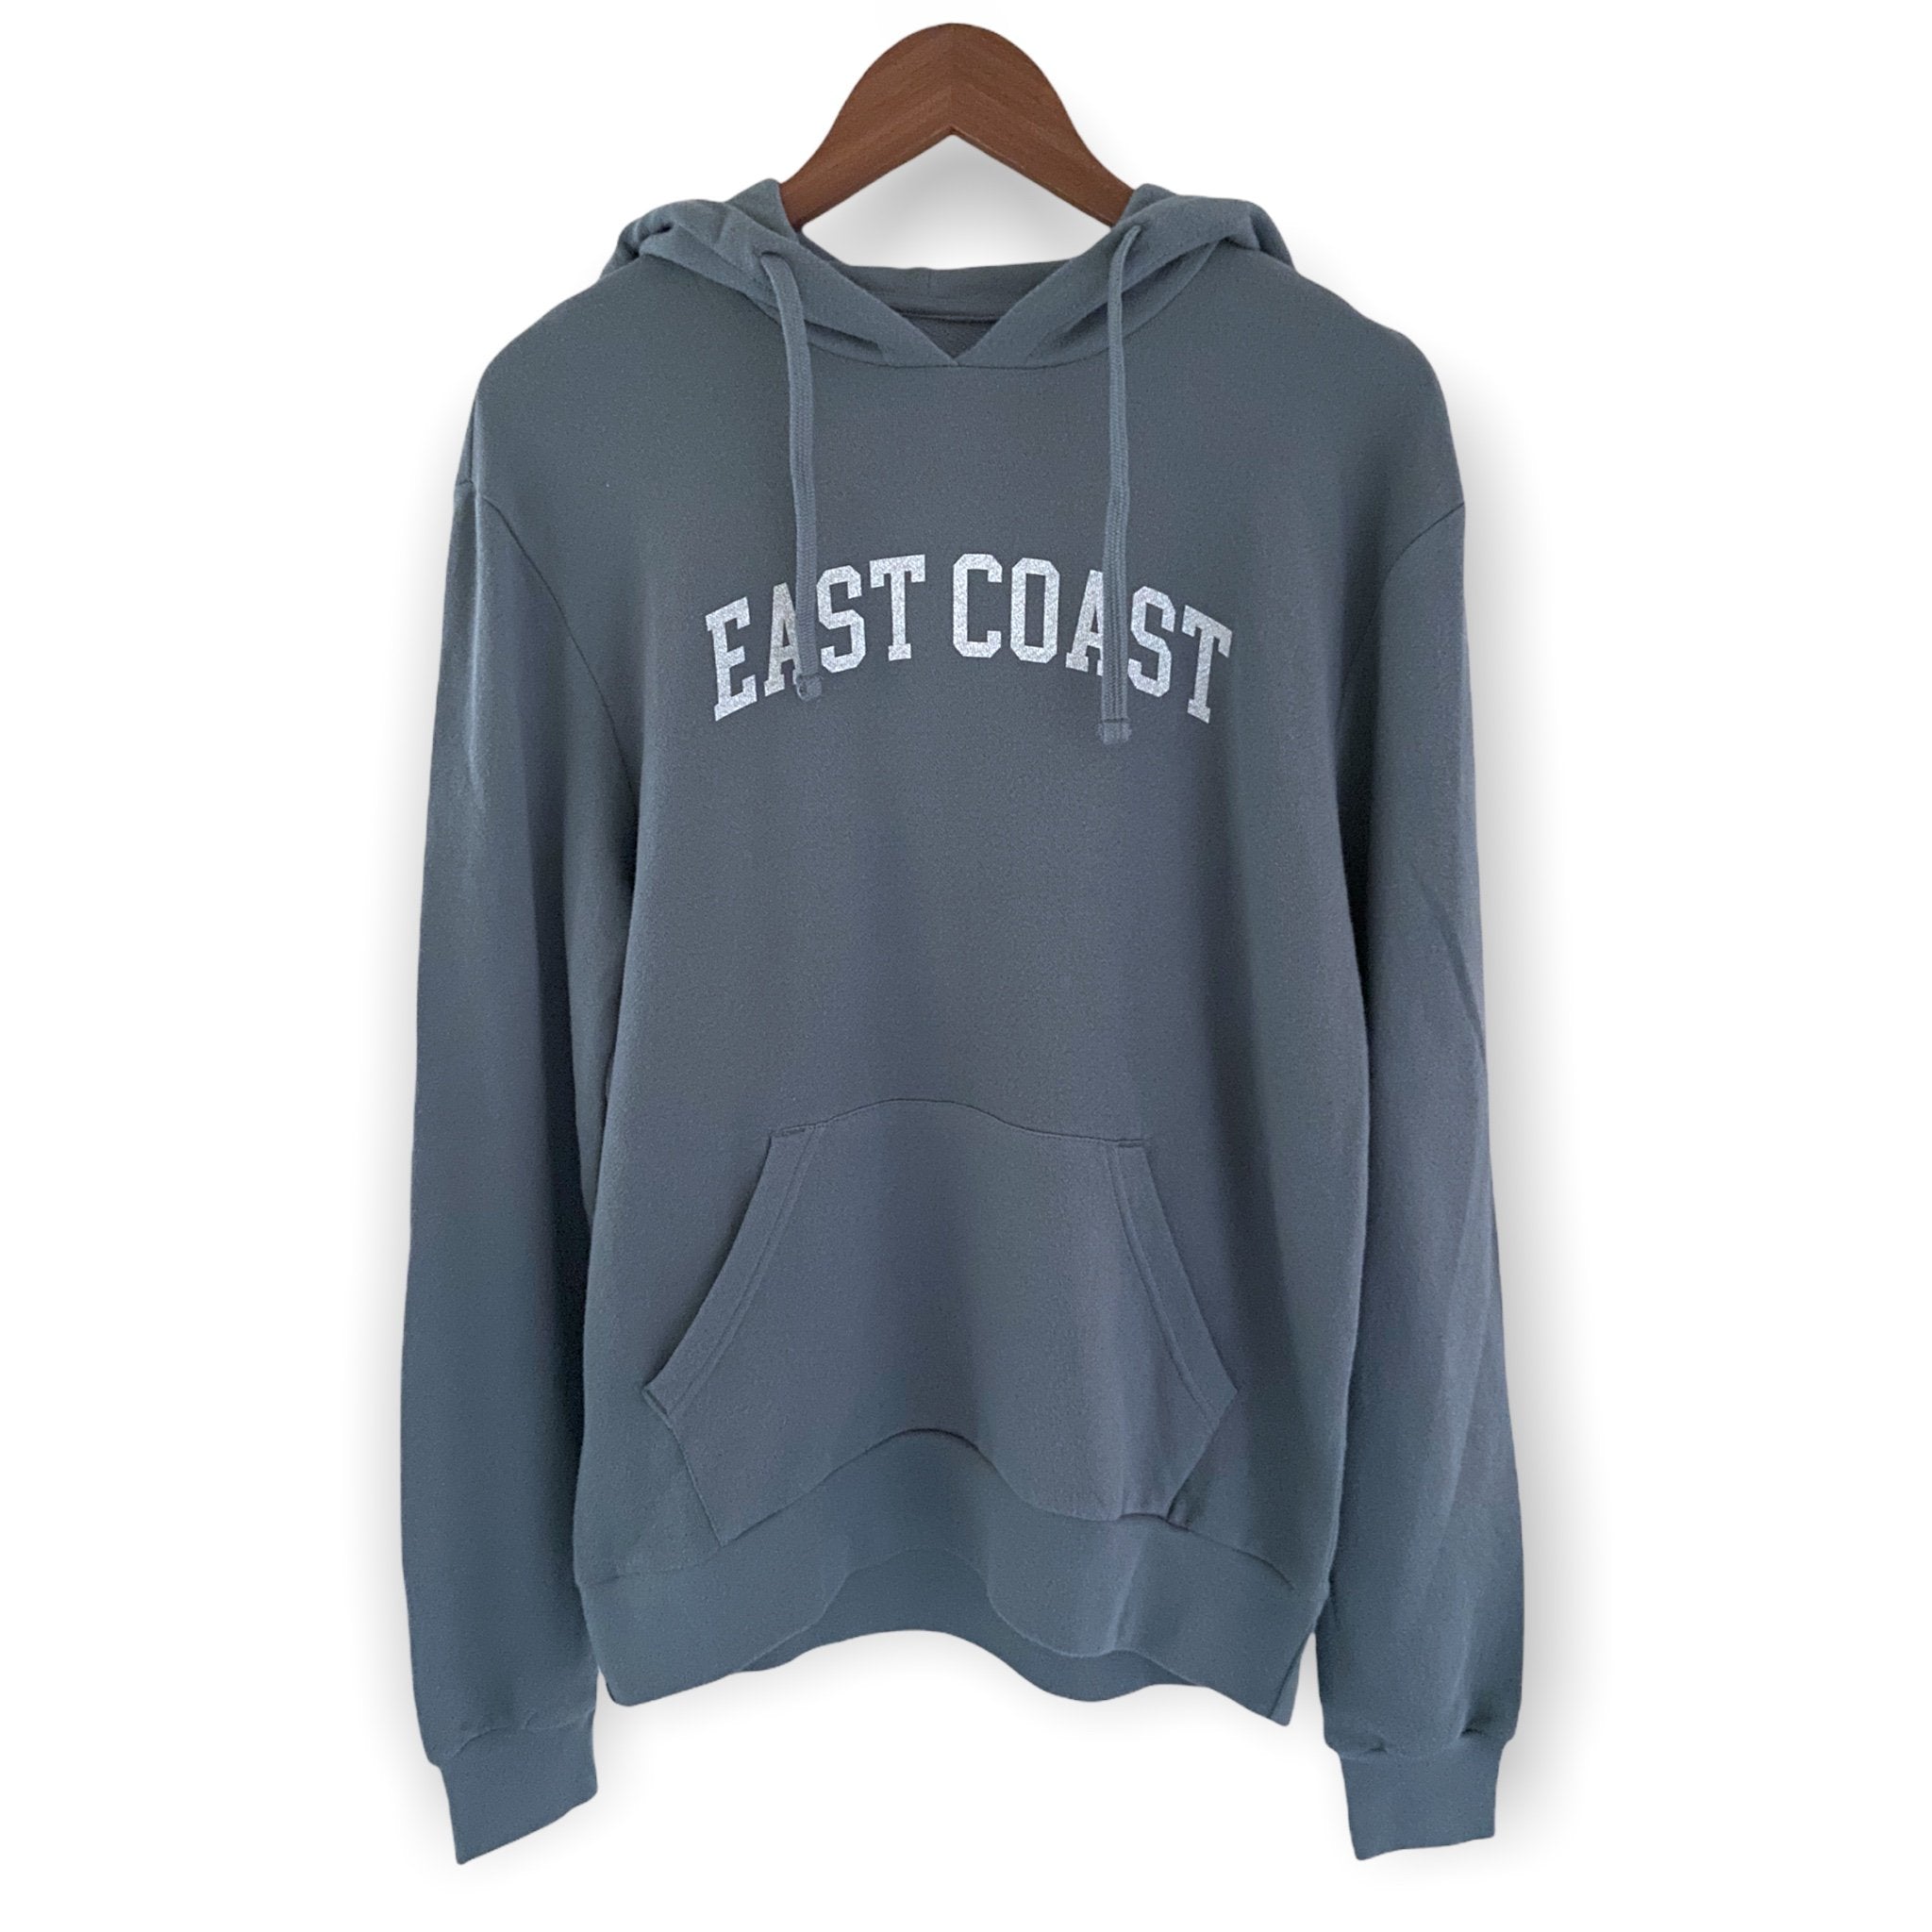 East Coast graphic hoodie sweatshirt